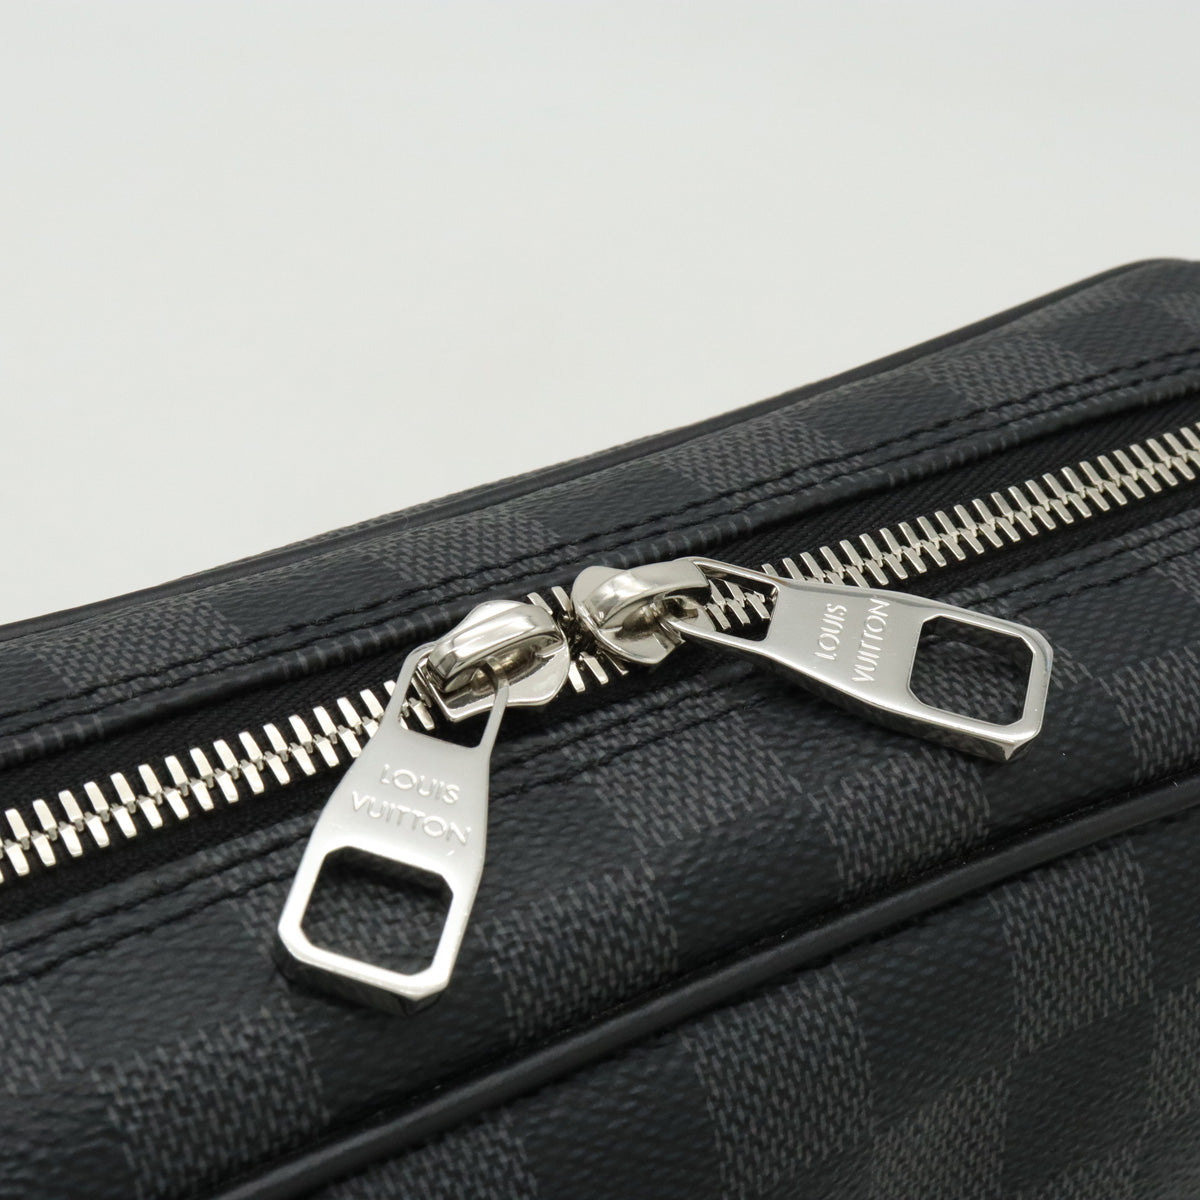 Louis Vuitton Black Damier Graphite Toiletry Pouch Zip Case Wallet